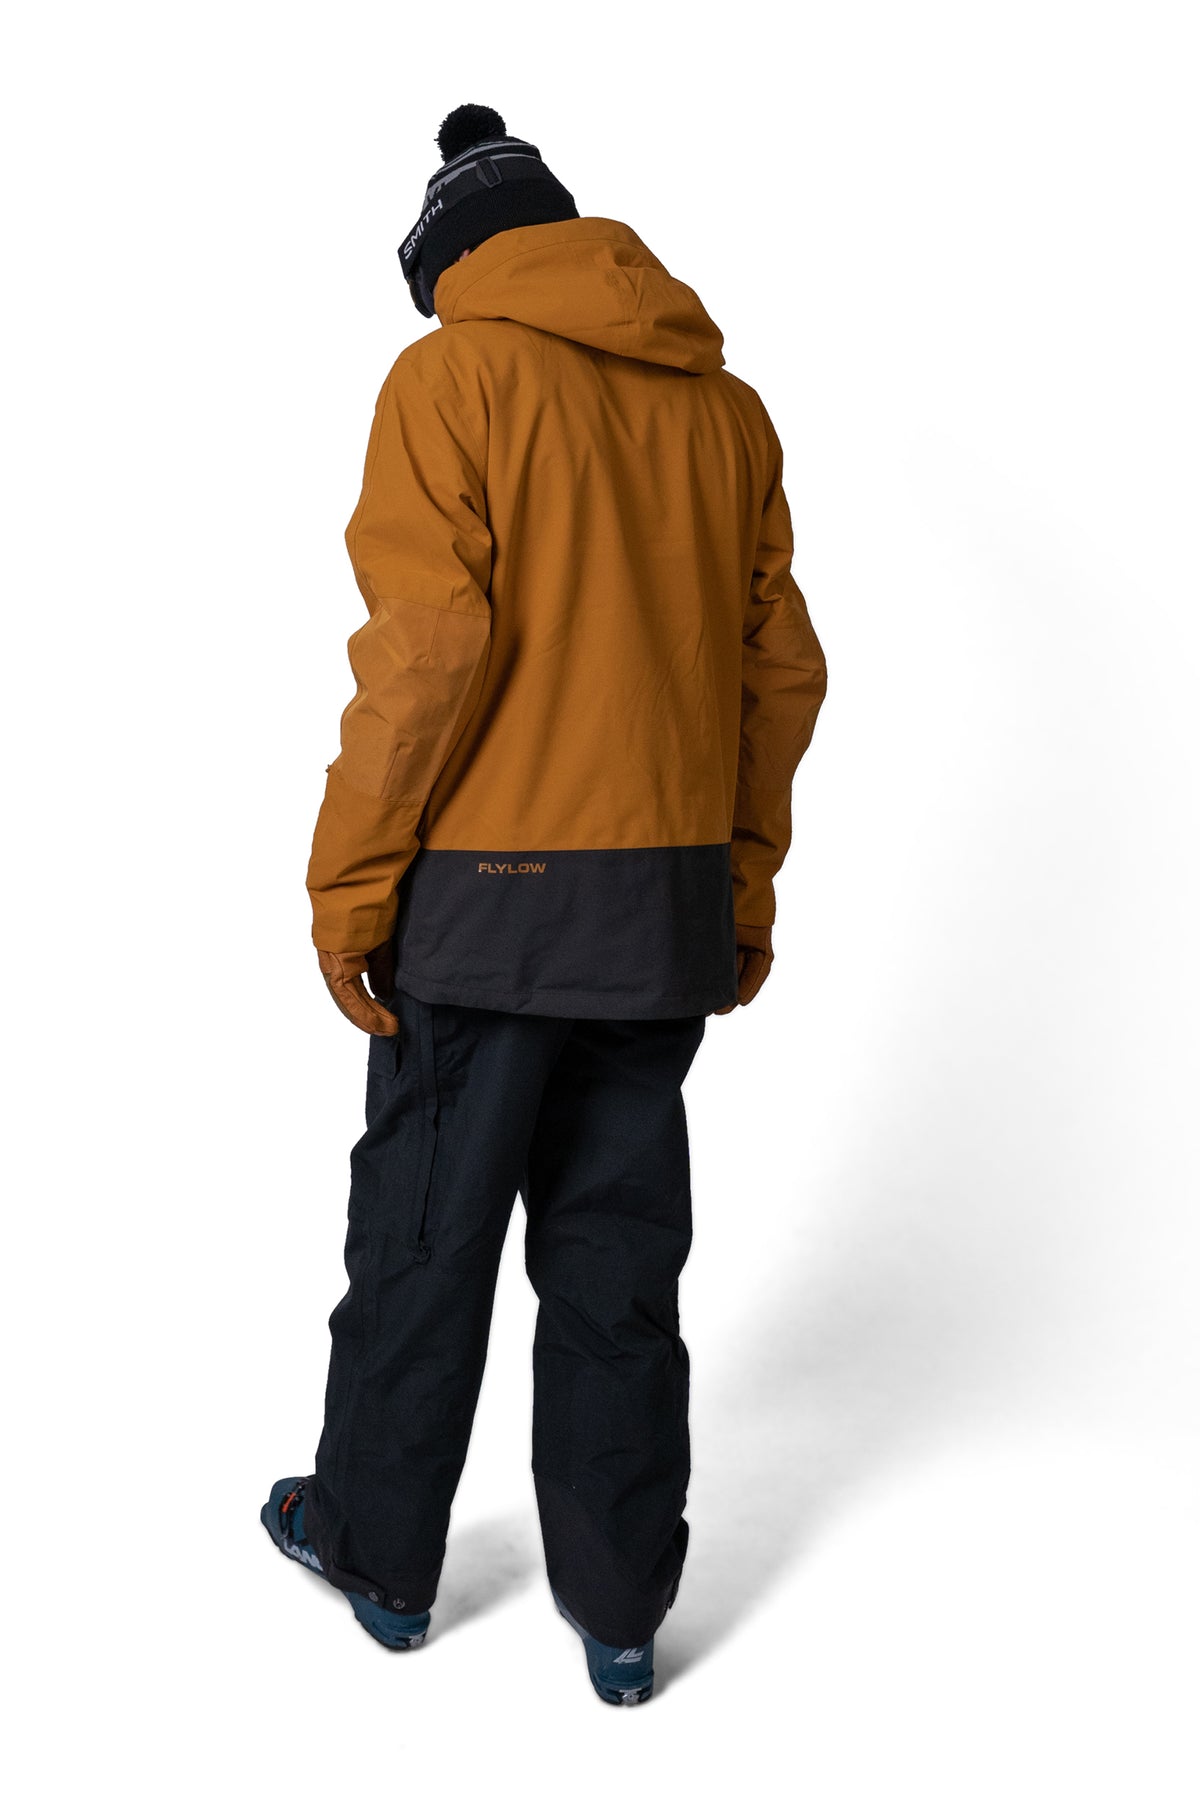 Dante Jacket - Men's Insulated Ski Jacket | Flylow Gear